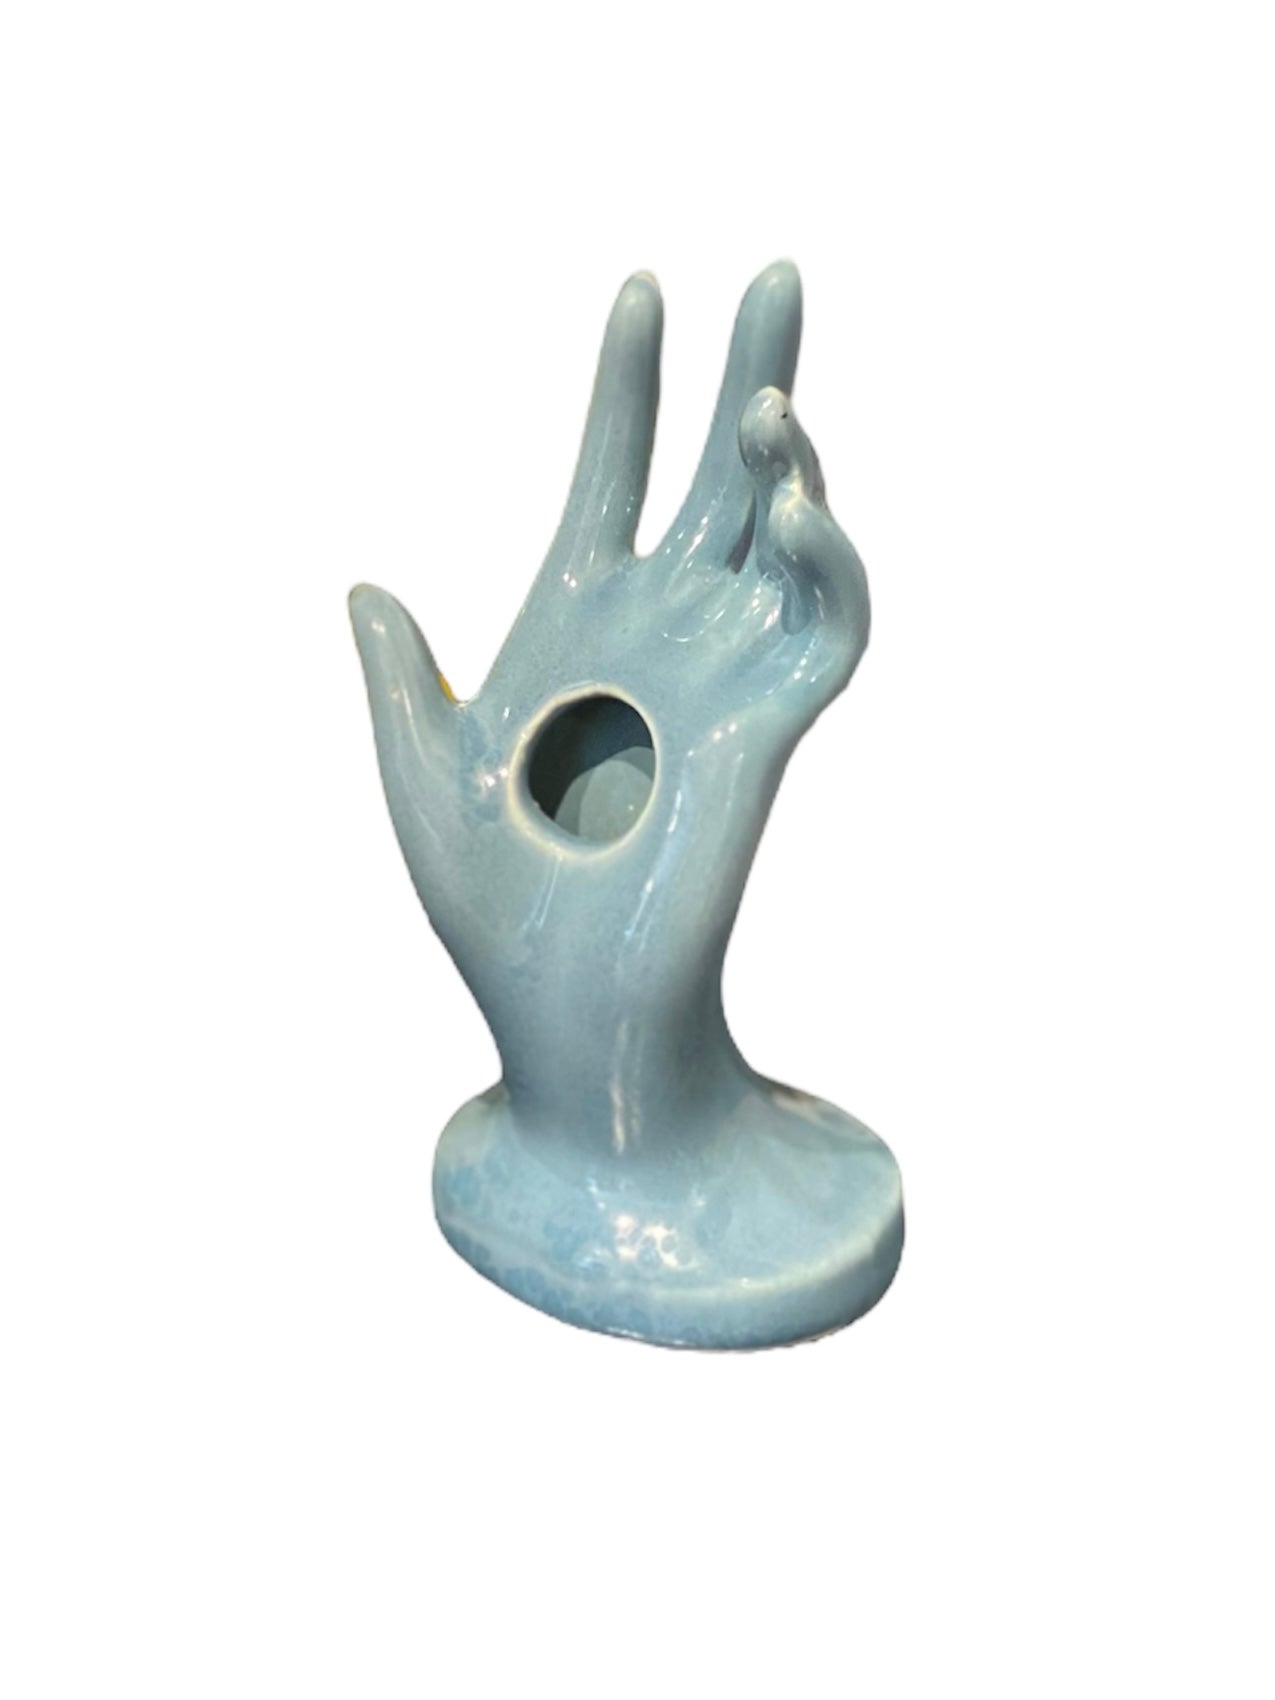 Riverbend Vintage French Blue Hand Vase